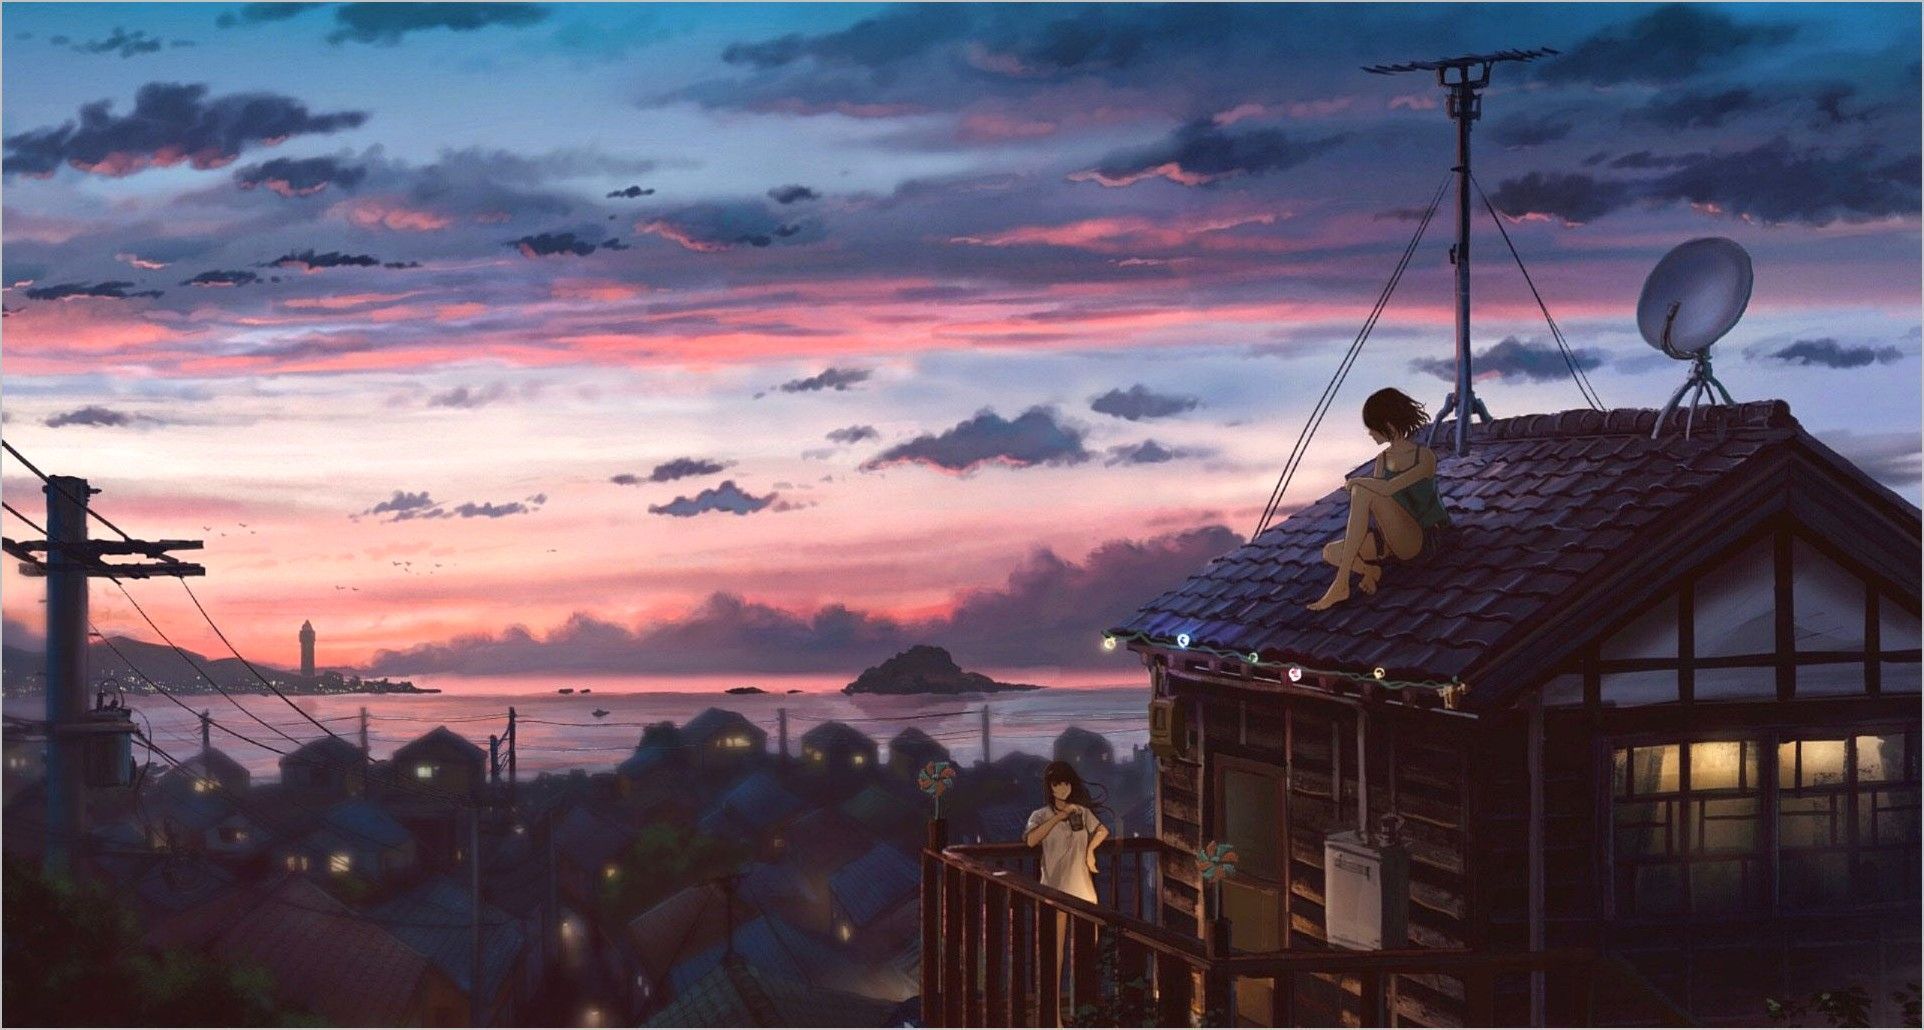 Anime Scenery Aesthetic Wallpaper. - Anime landscape